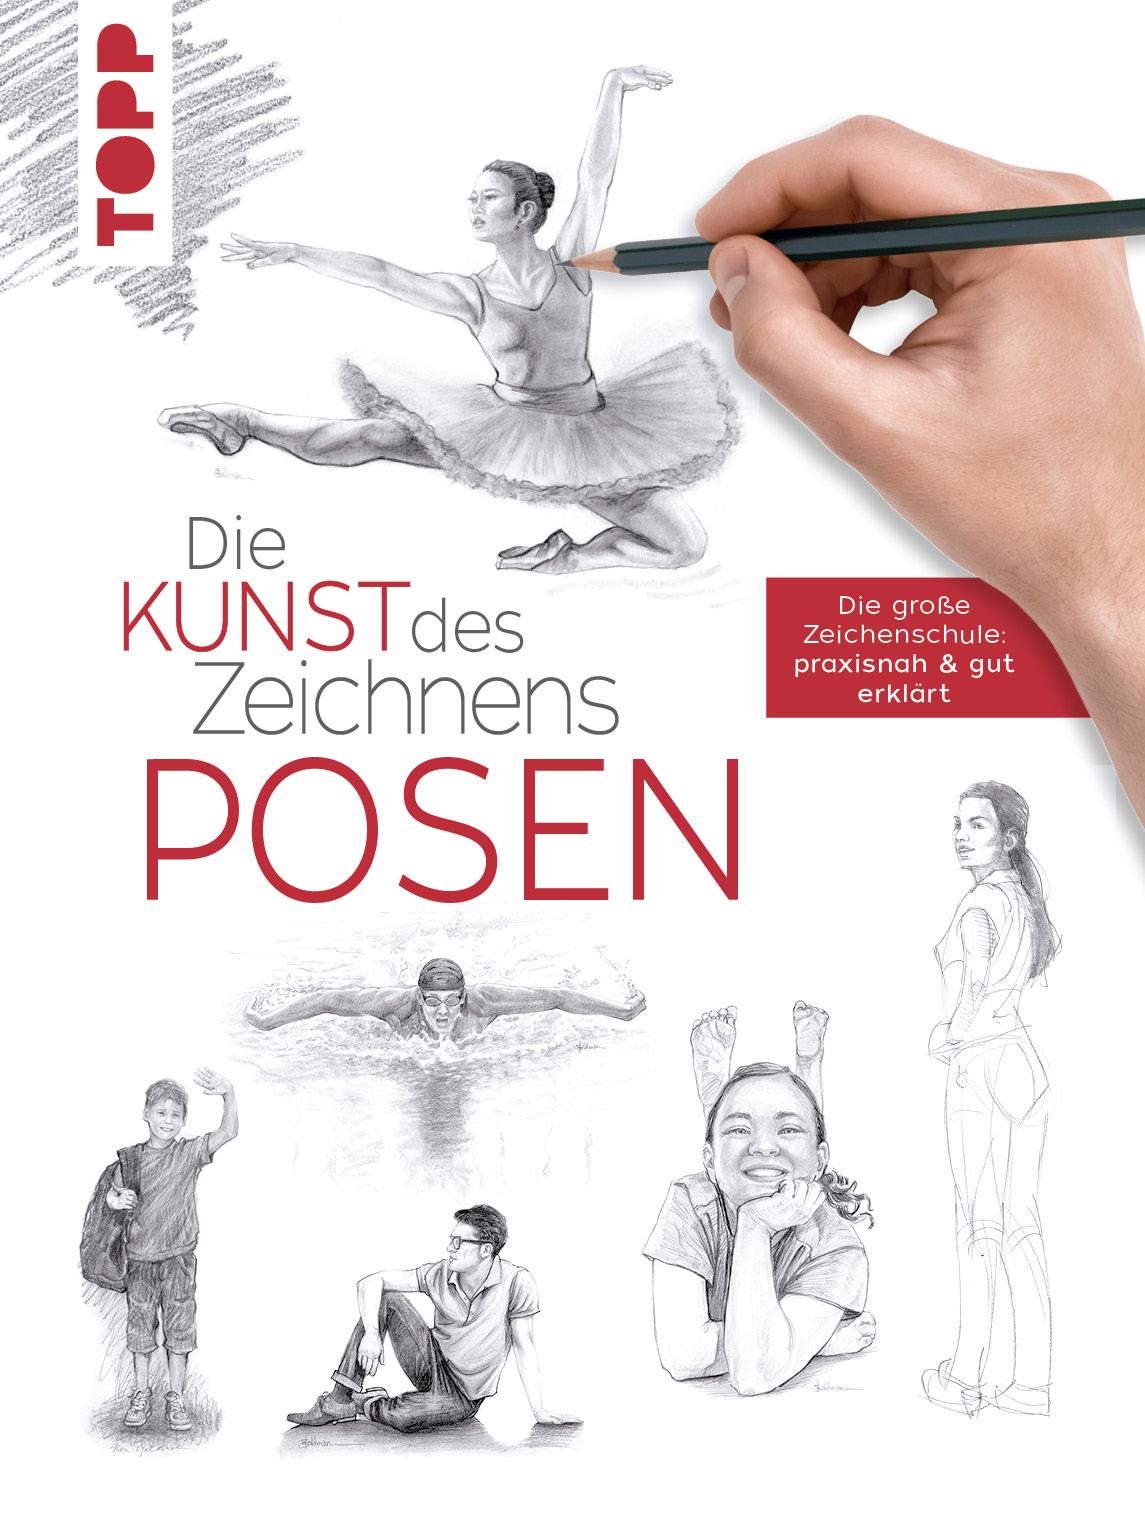 Die Kunst des Zeichnens: Posen Die große Zeichenschule: praxisnah & gut erklärt